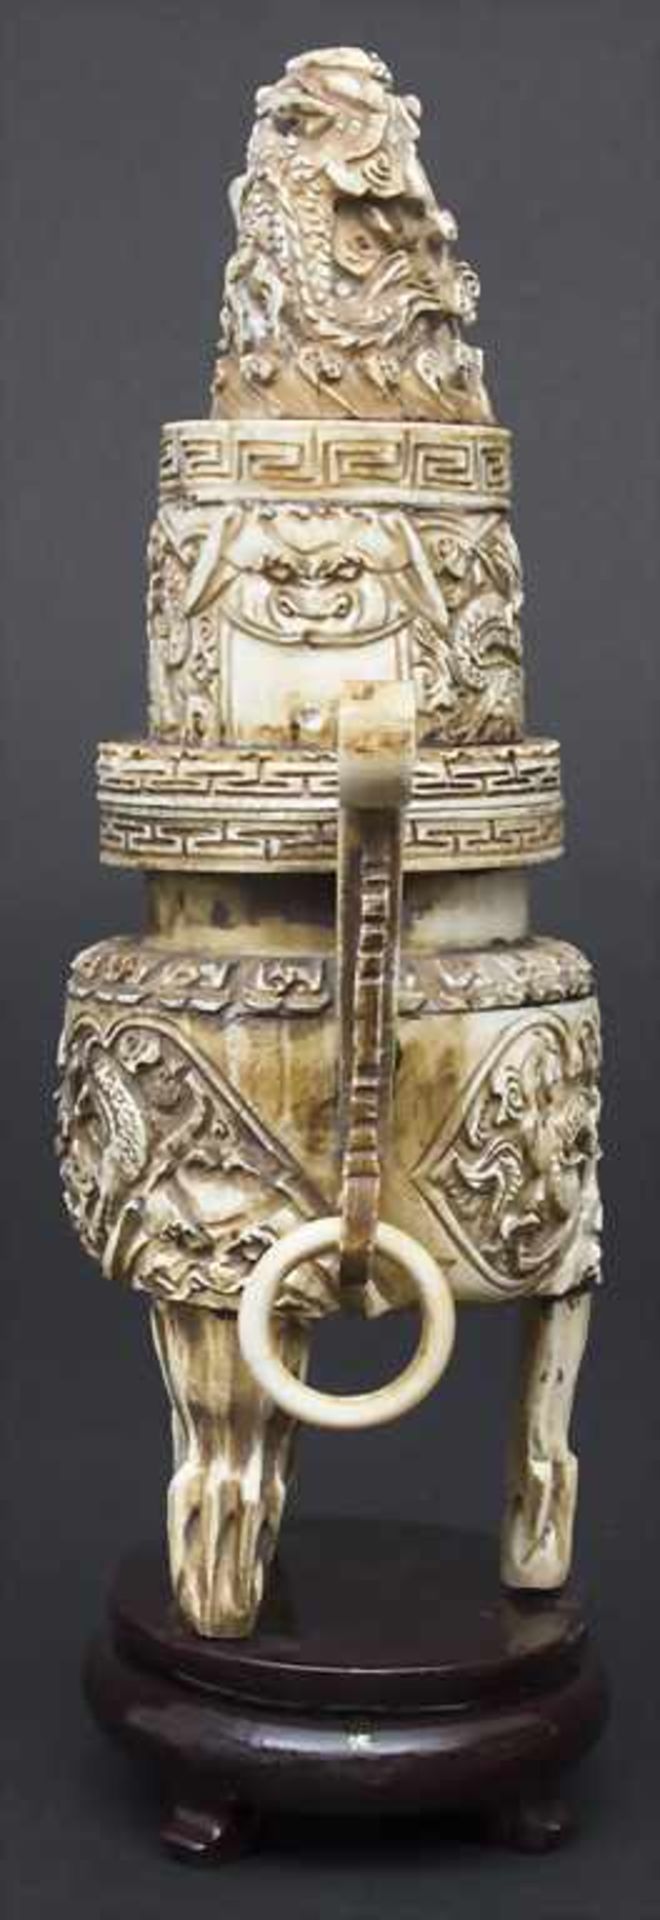 Räuchergefäß mit Drachendekor / An incense burner with dragons, China, um 1900Material: Elfenbein, - Bild 7 aus 11